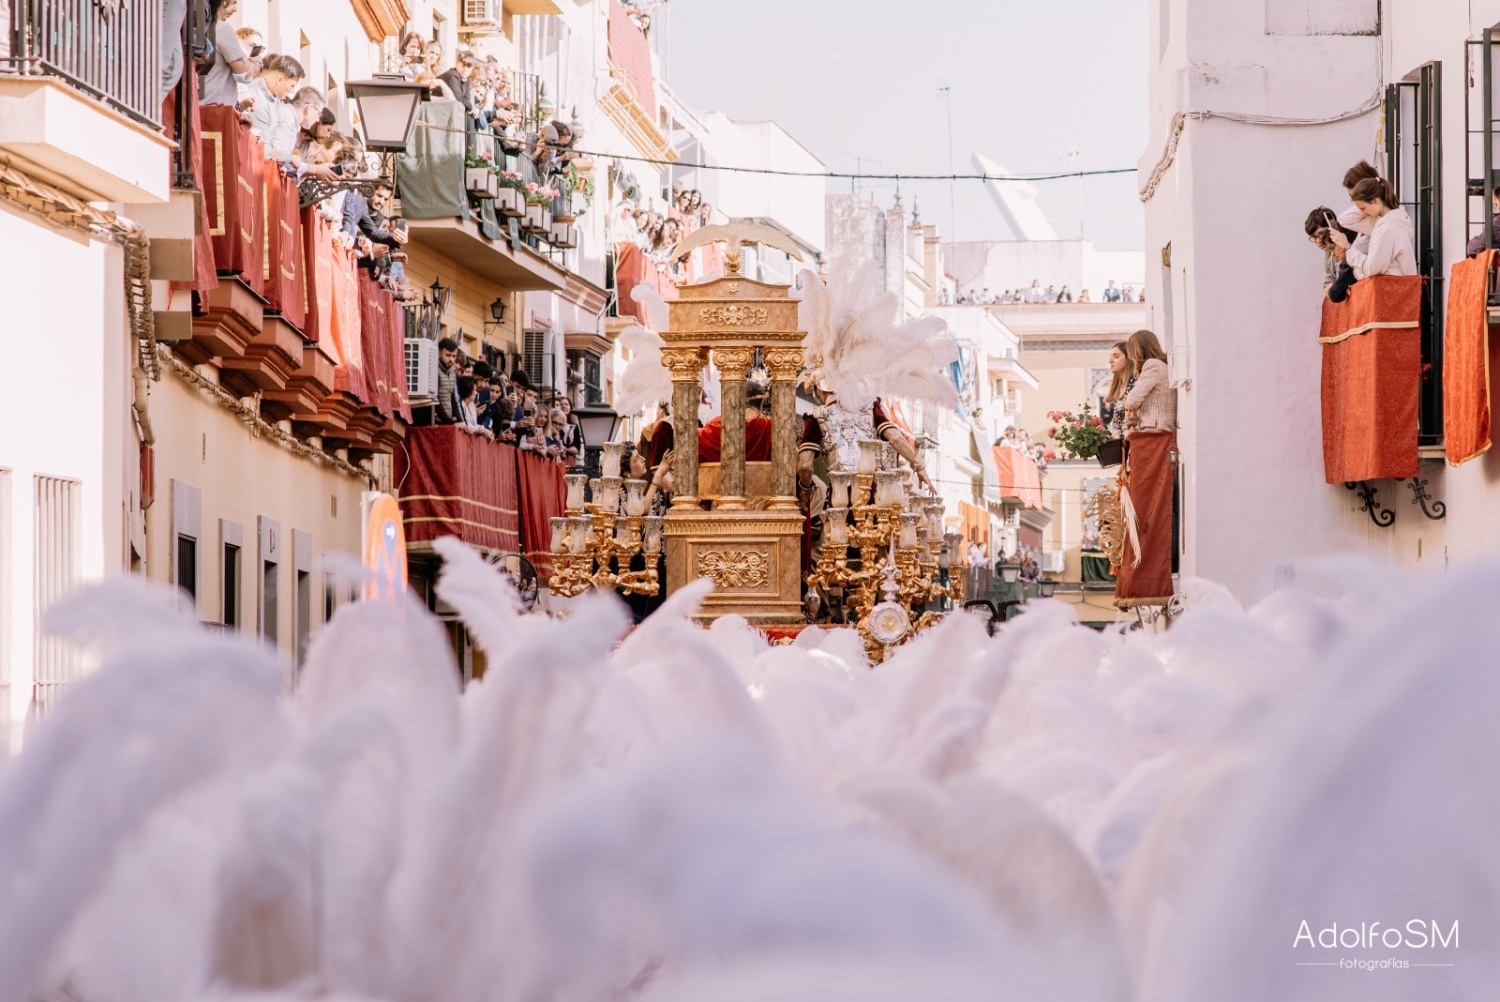 ACTUALIZACIÓN: Todos los horarios, itinerarios y mapas actualizados para la Semana Santa de Sevilla 2023